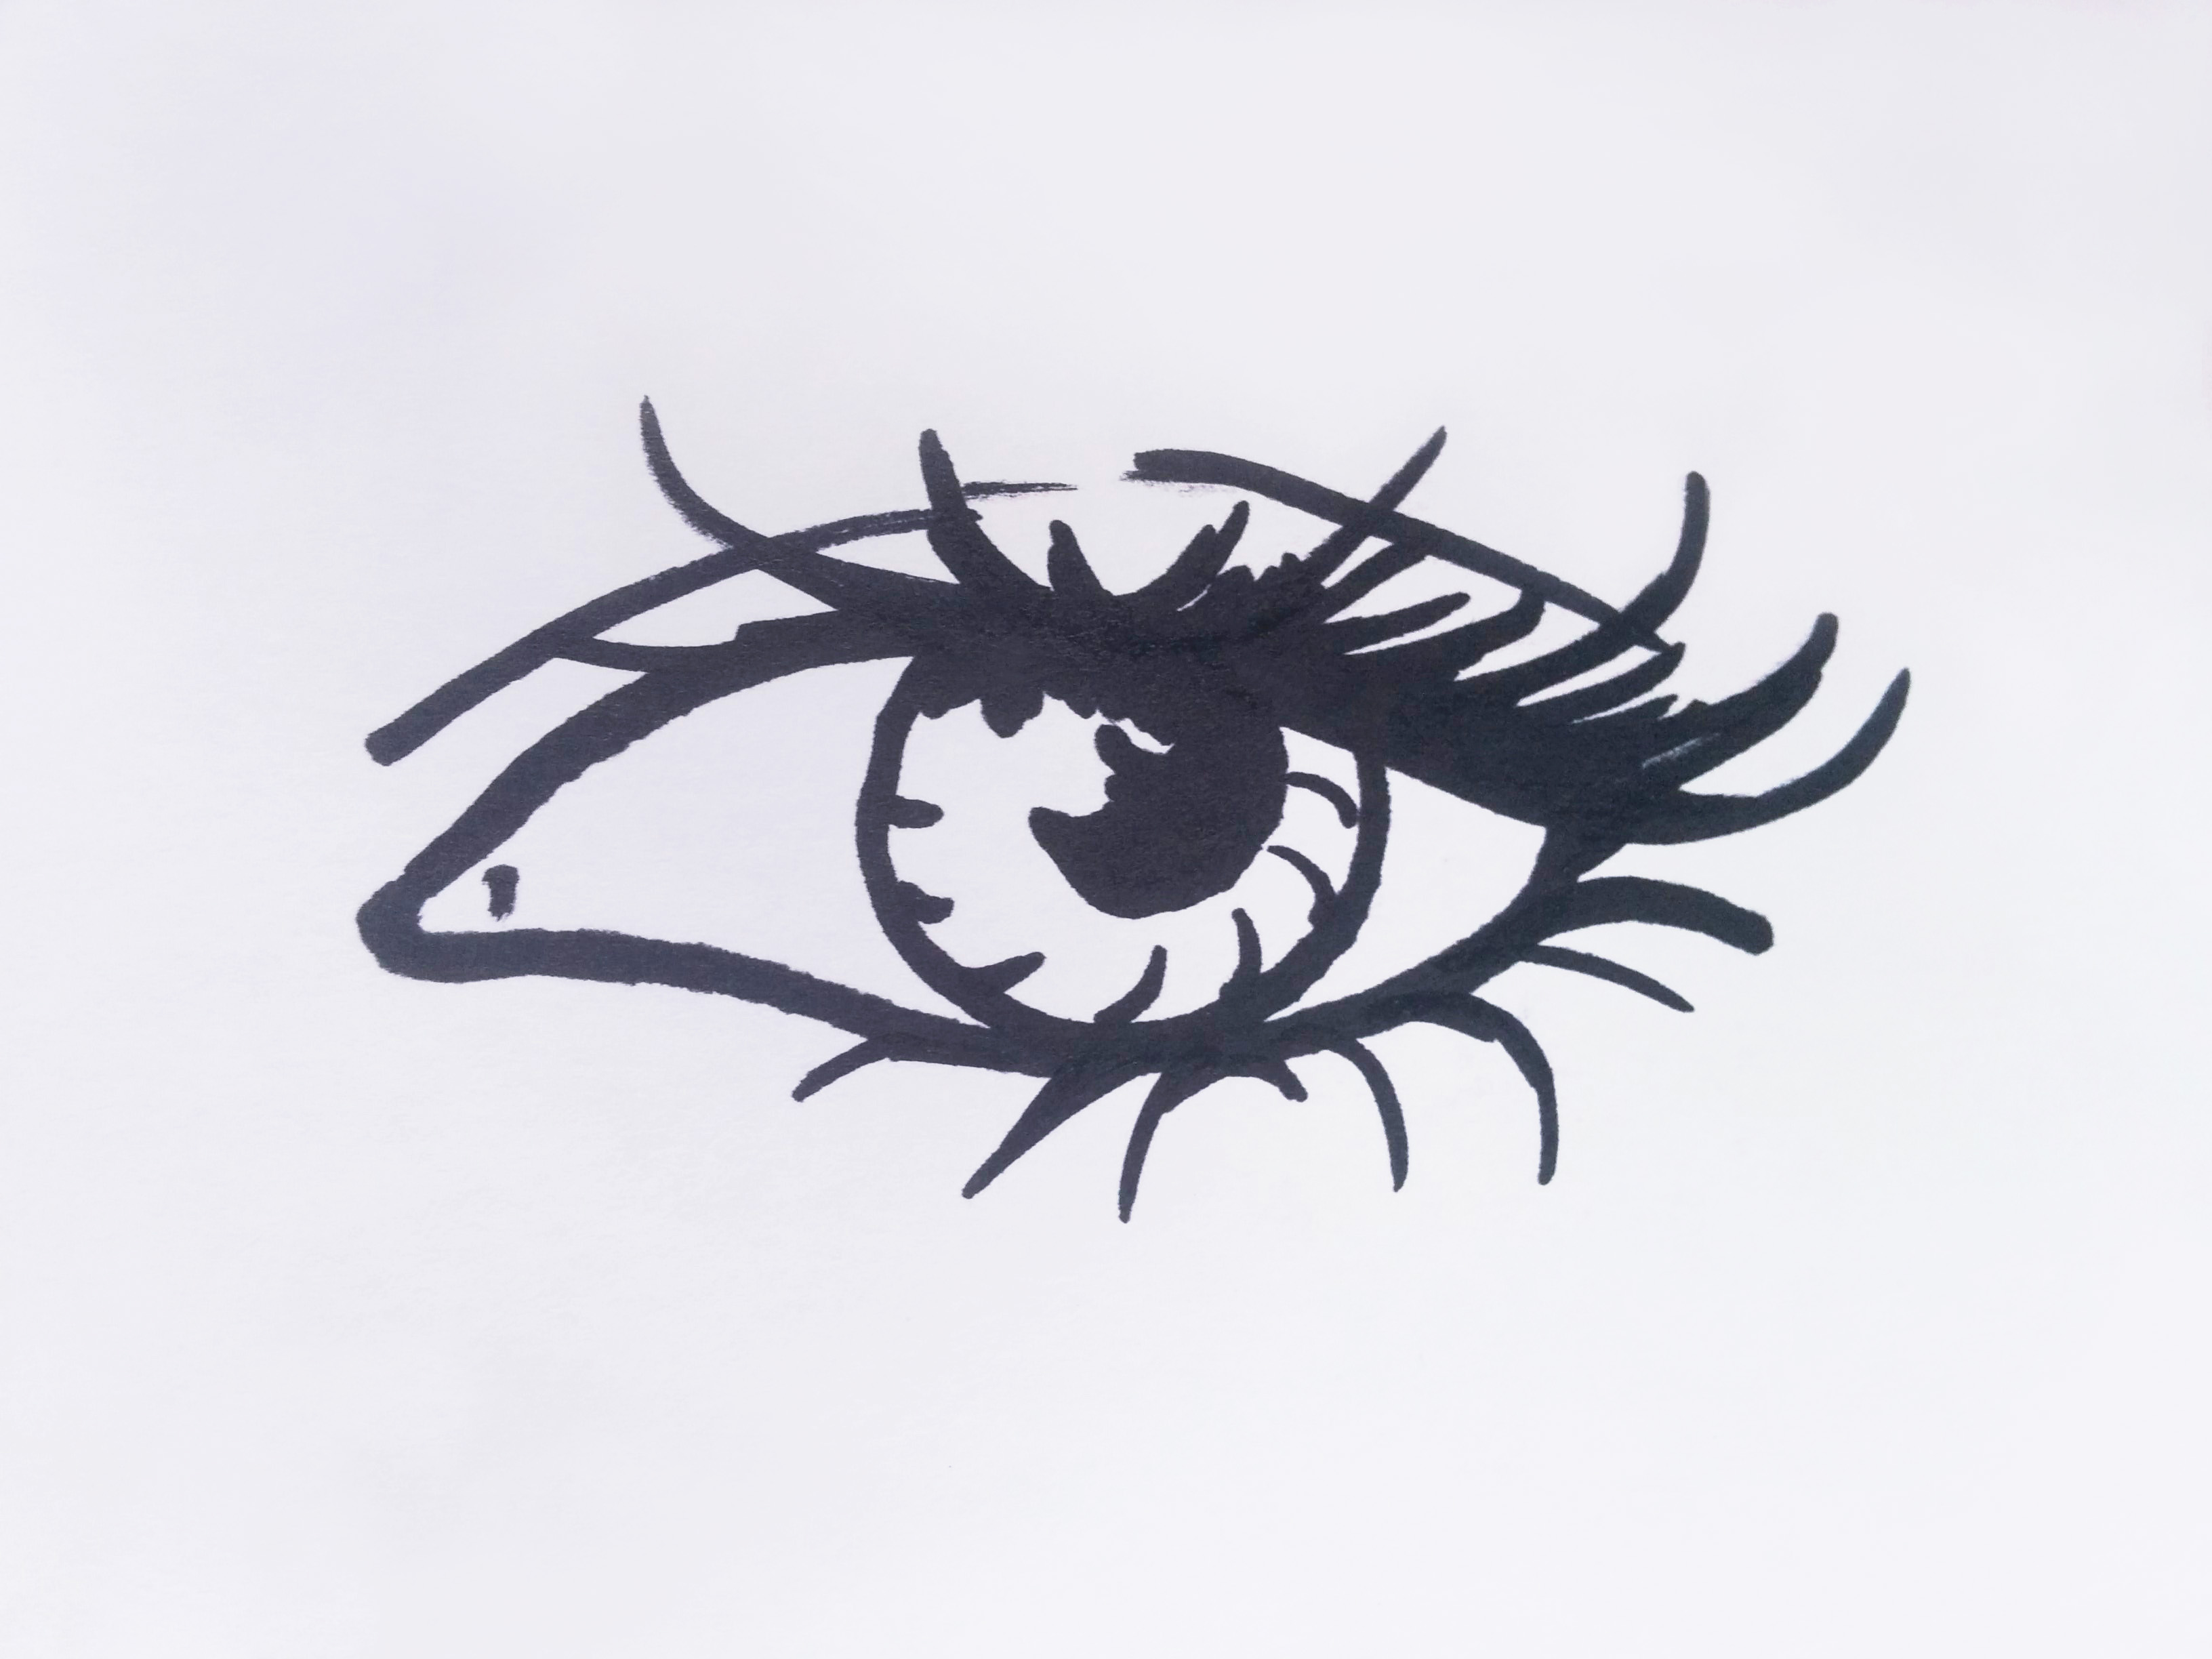 Eye black marker Sketch art by artist Alice Croft Глаз